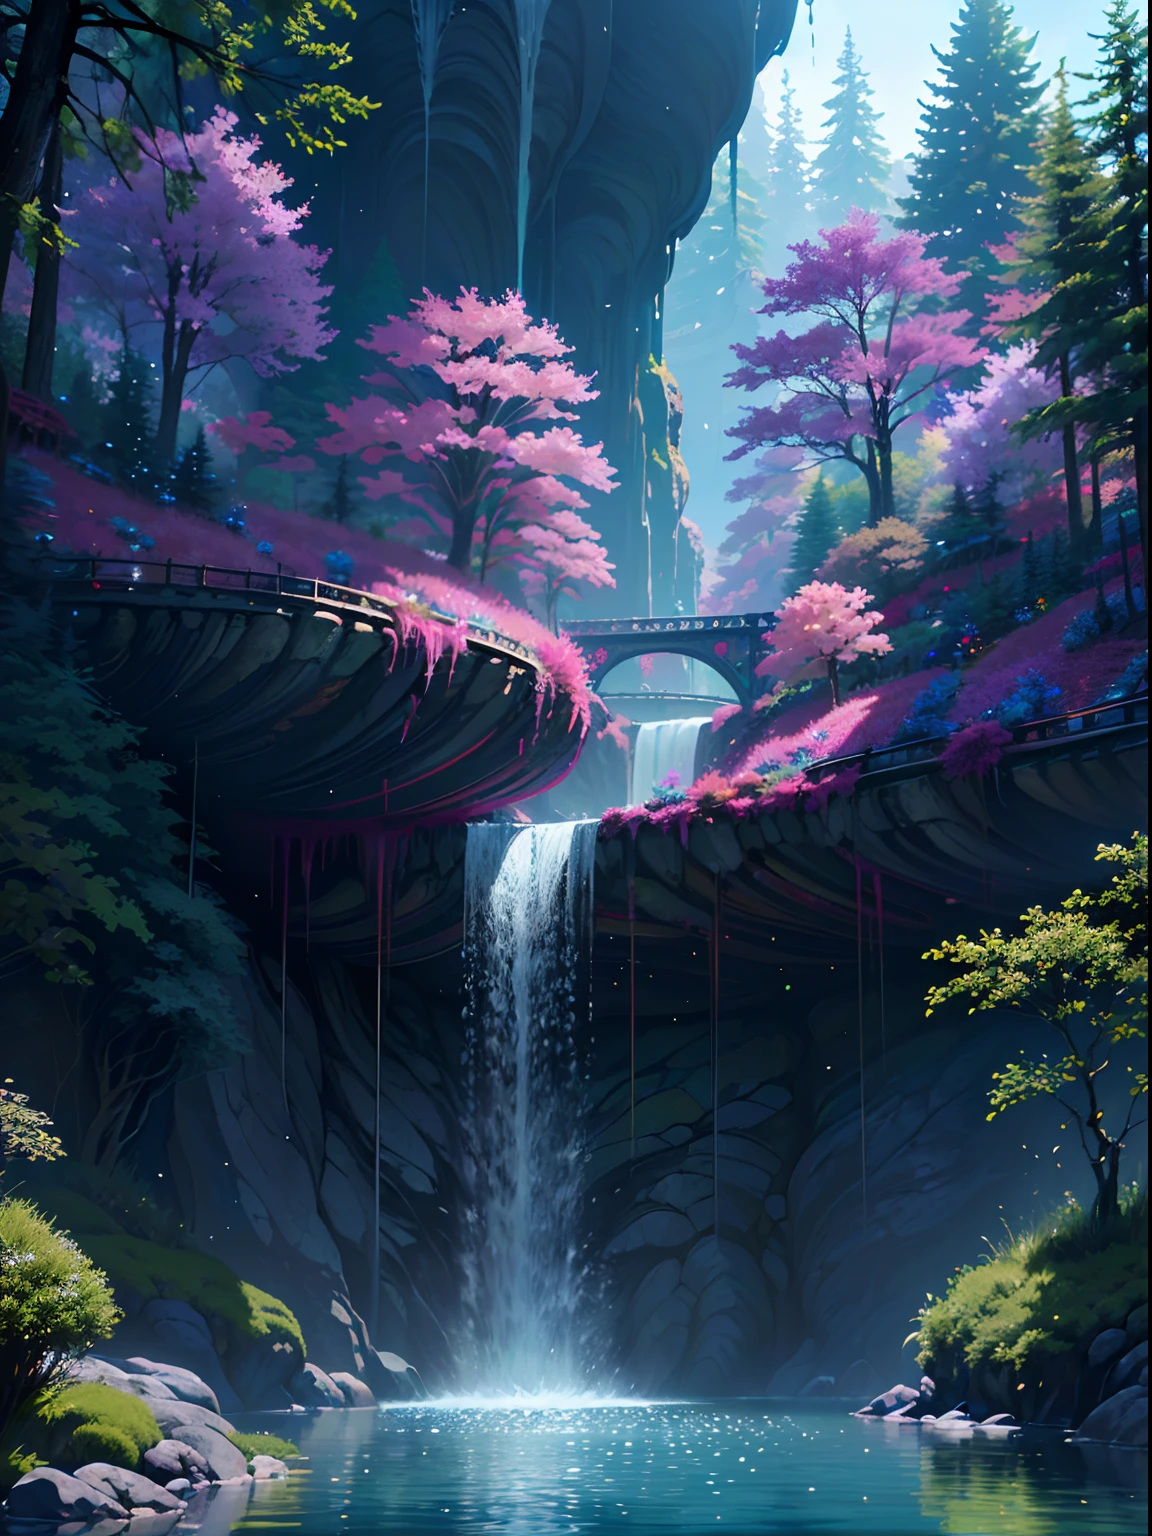 铁磁流体, A beautiful bio朋克 waterfall in nature, 丰富多彩的, 花朵, 松树, 一座悬索桥, 朋克, 哔哔声.